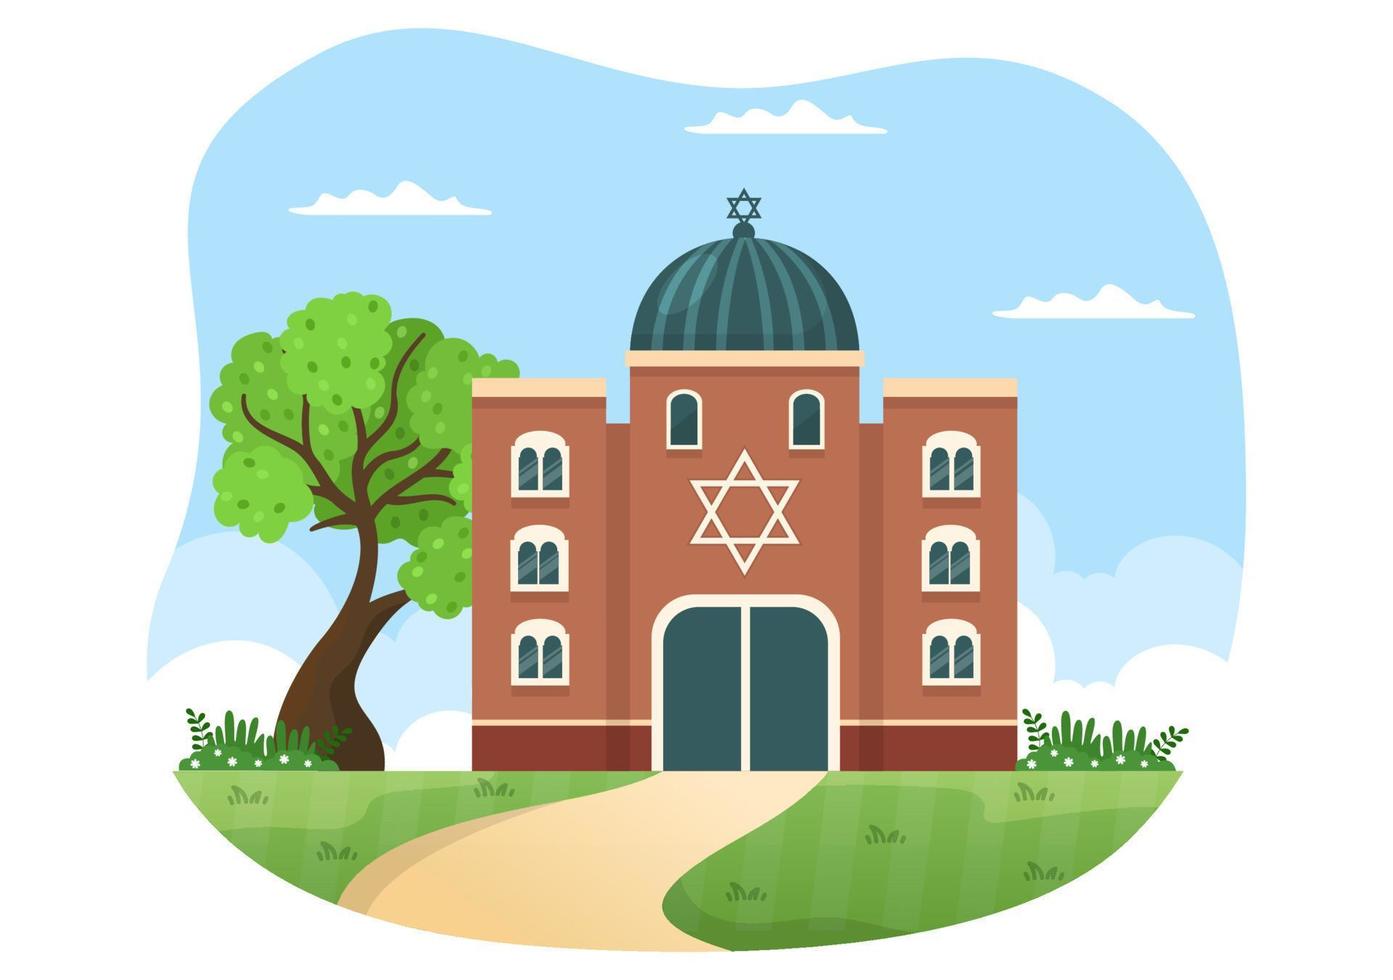 bâtiment de synagogue ou temple juif avec lieu de culte religieux, hébreu ou judaïsme et juif dans le modèle illustration plate de dessin animé dessiné à la main vecteur